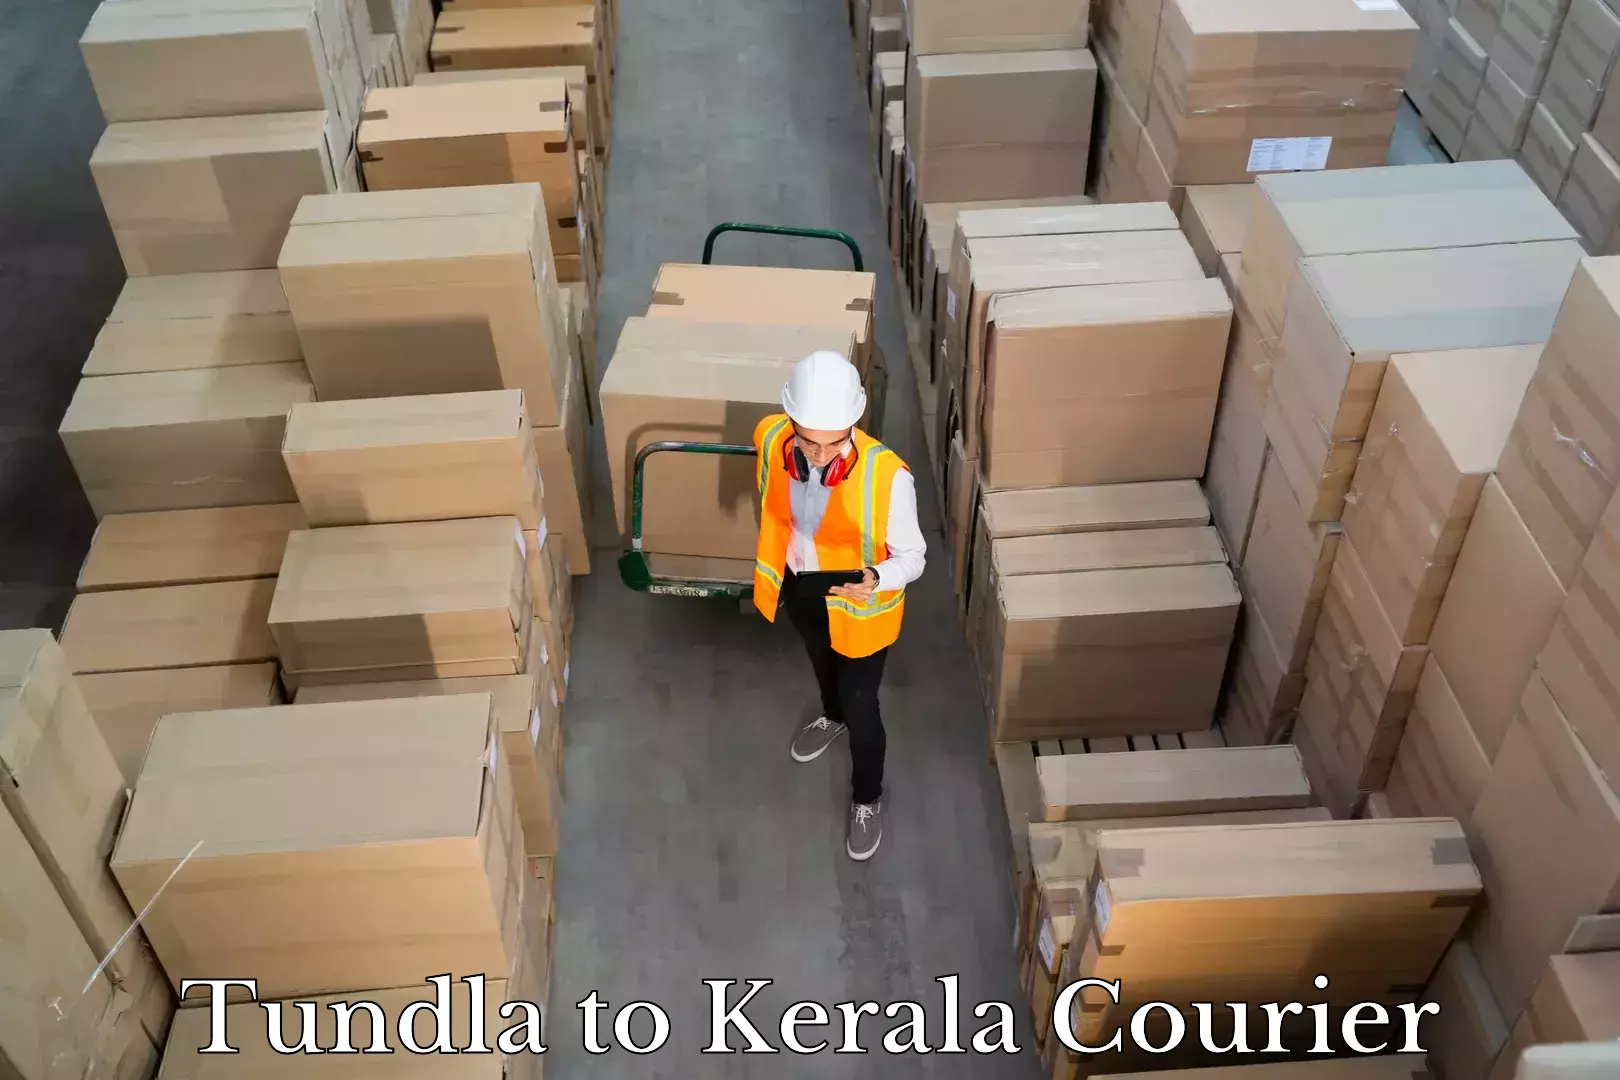 Baggage transport scheduler Tundla to Kerala